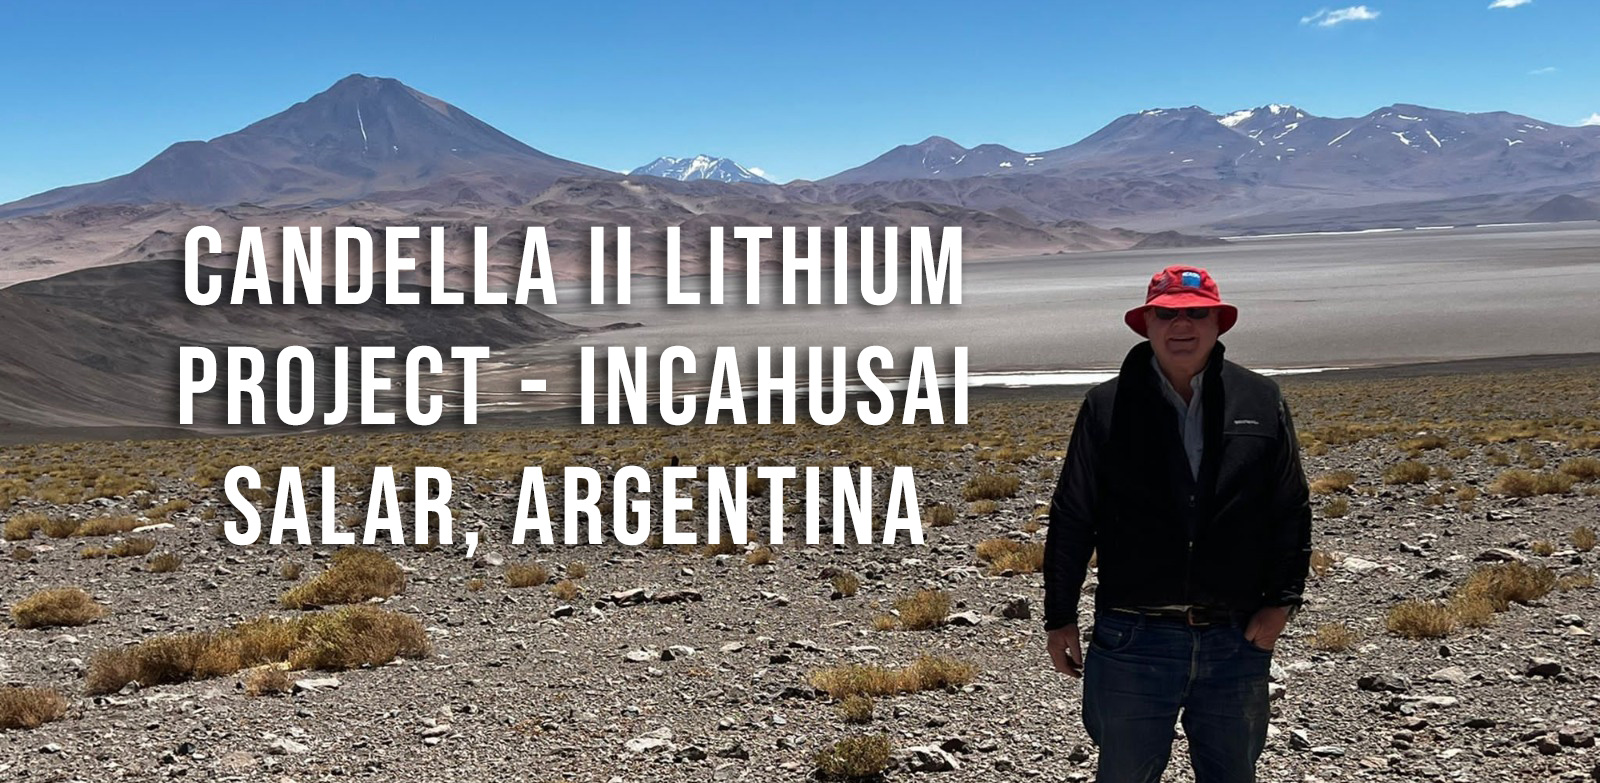 Candella II Lithium Project - Incahusai Salar, Argentina